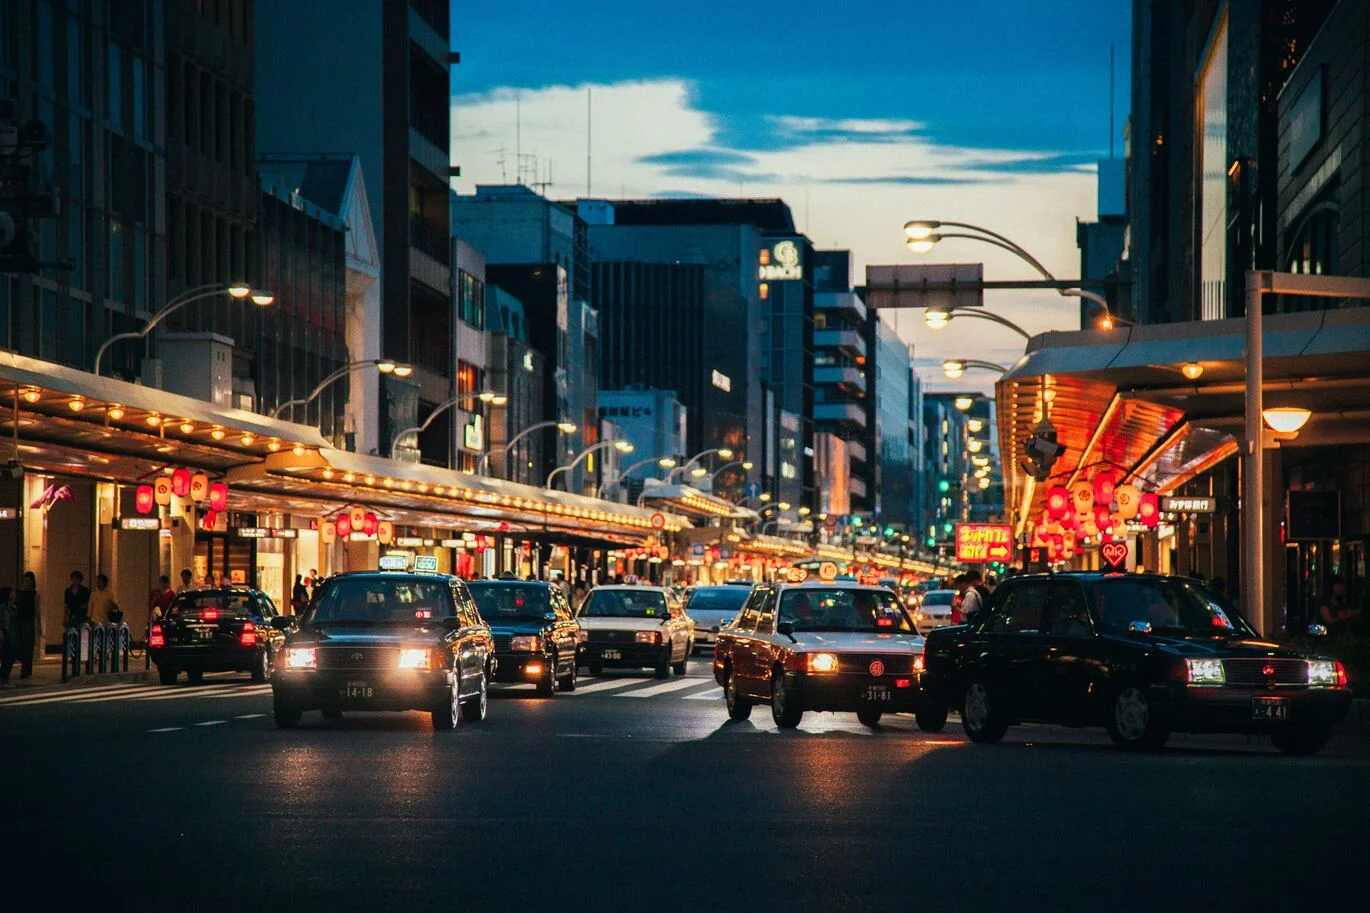 夜晚的京都街道有許多車輛